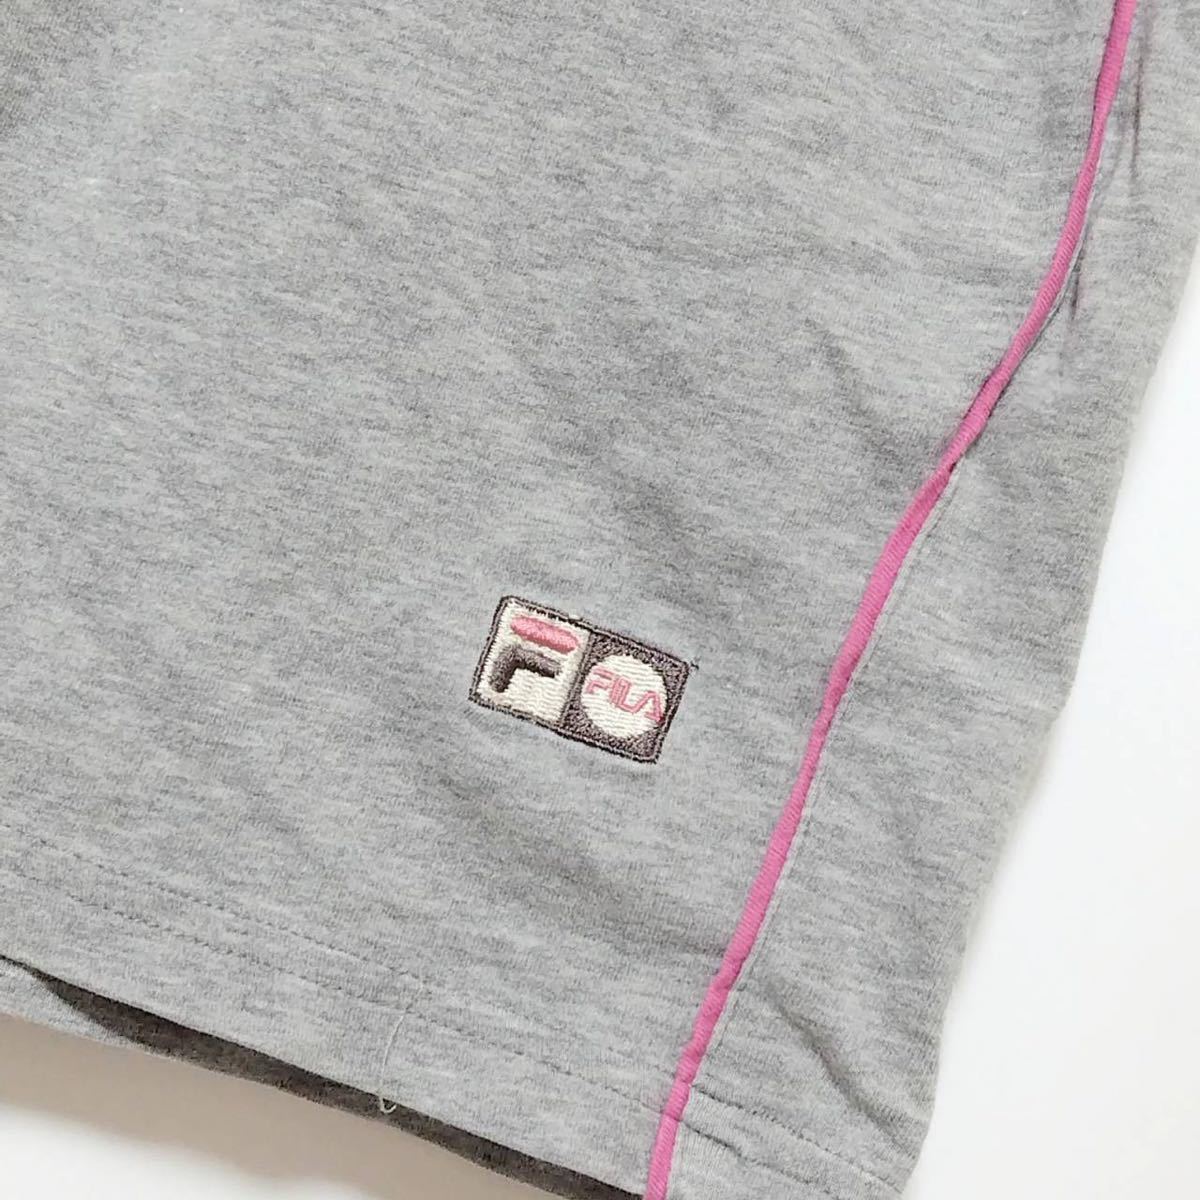 FILA one отметка Logo вышивка бегун шорты filler серый розовый L~LL женский Jim тренировка прогулка бег 